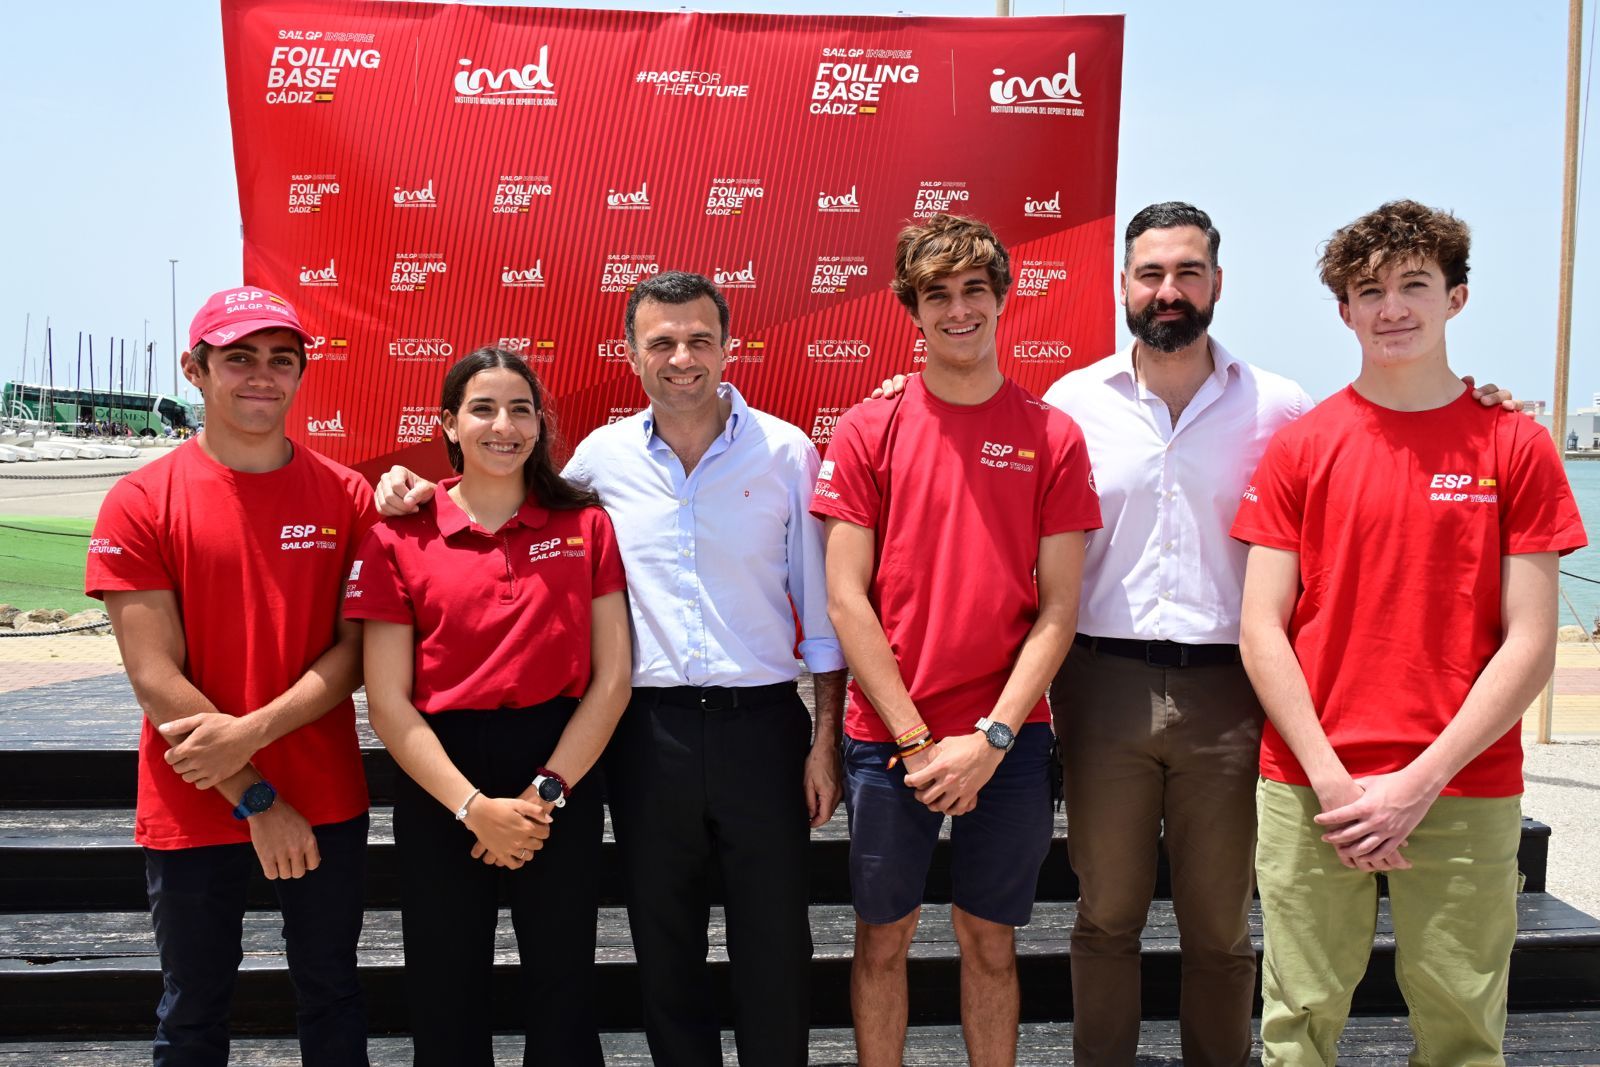 Más de 400 deportistas participarán en la primera edición del ‘Cádiz Foiling DAYS’.